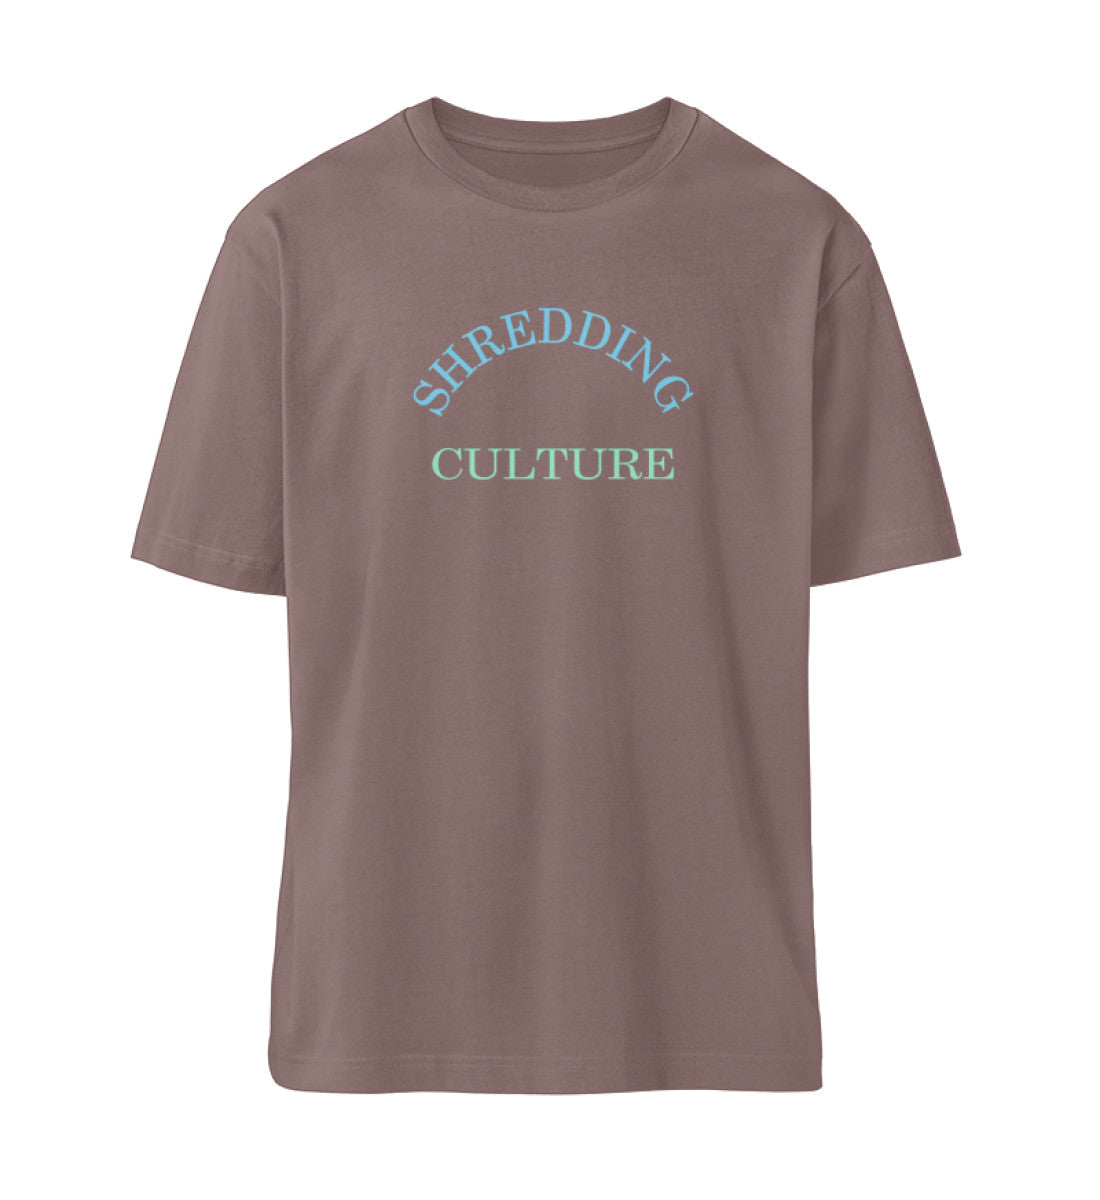 Braunes T-Shirt Unisex Relaxed Fit für Frauen und Männer bedruckt mit dem Design der Roger Rockawoo Kollektion Skateboard Shredding Culture Community